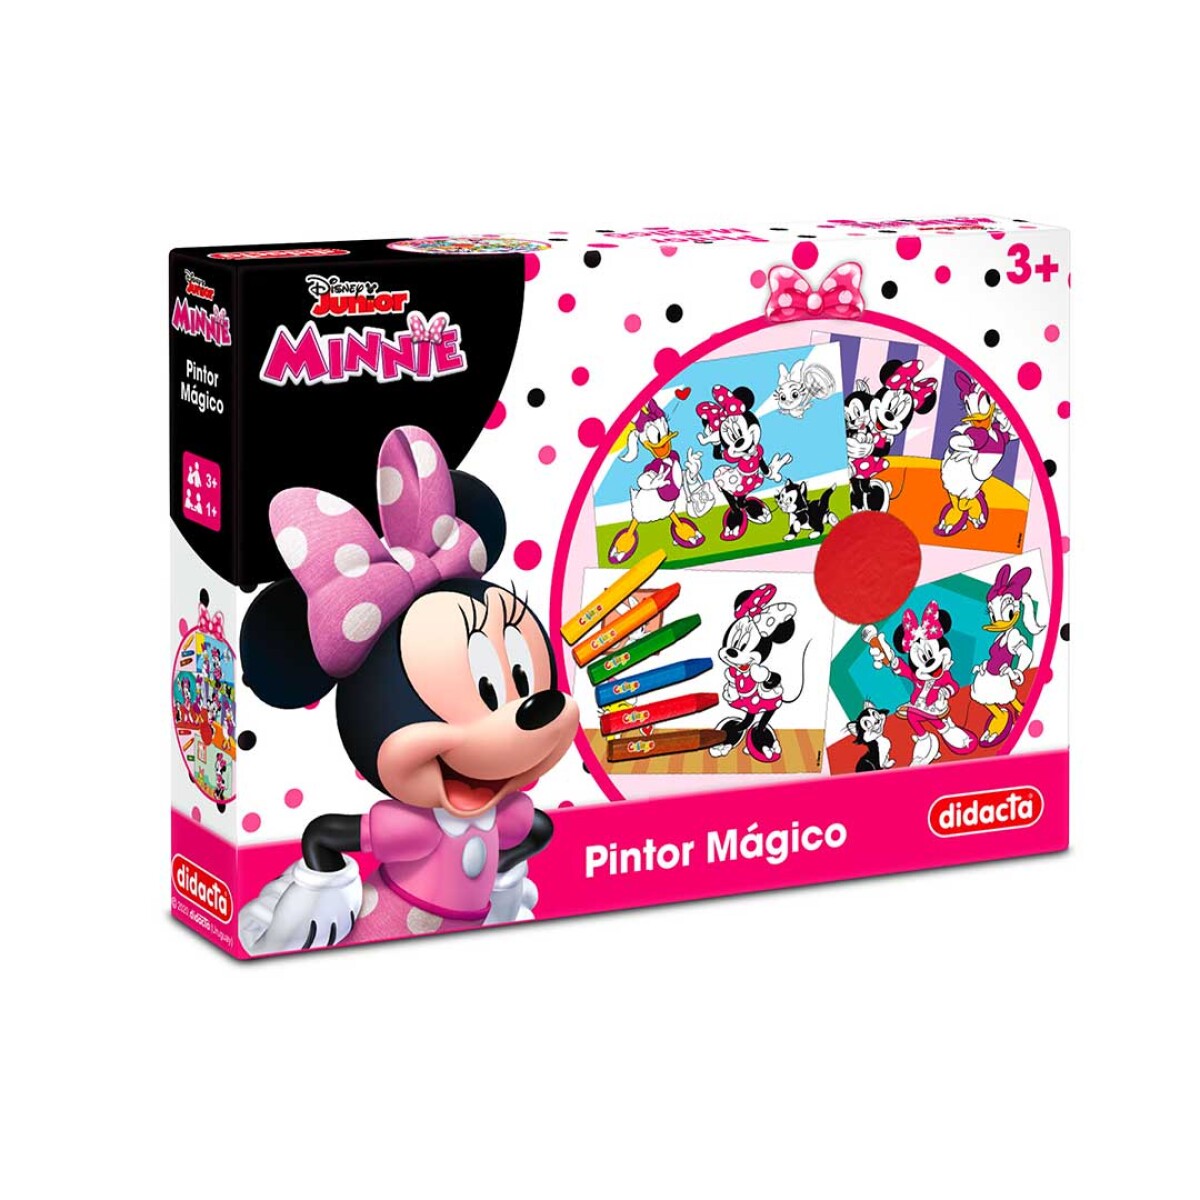 Pintor mágico Minnie Mouse Didacta con crayones y láminas - 001 